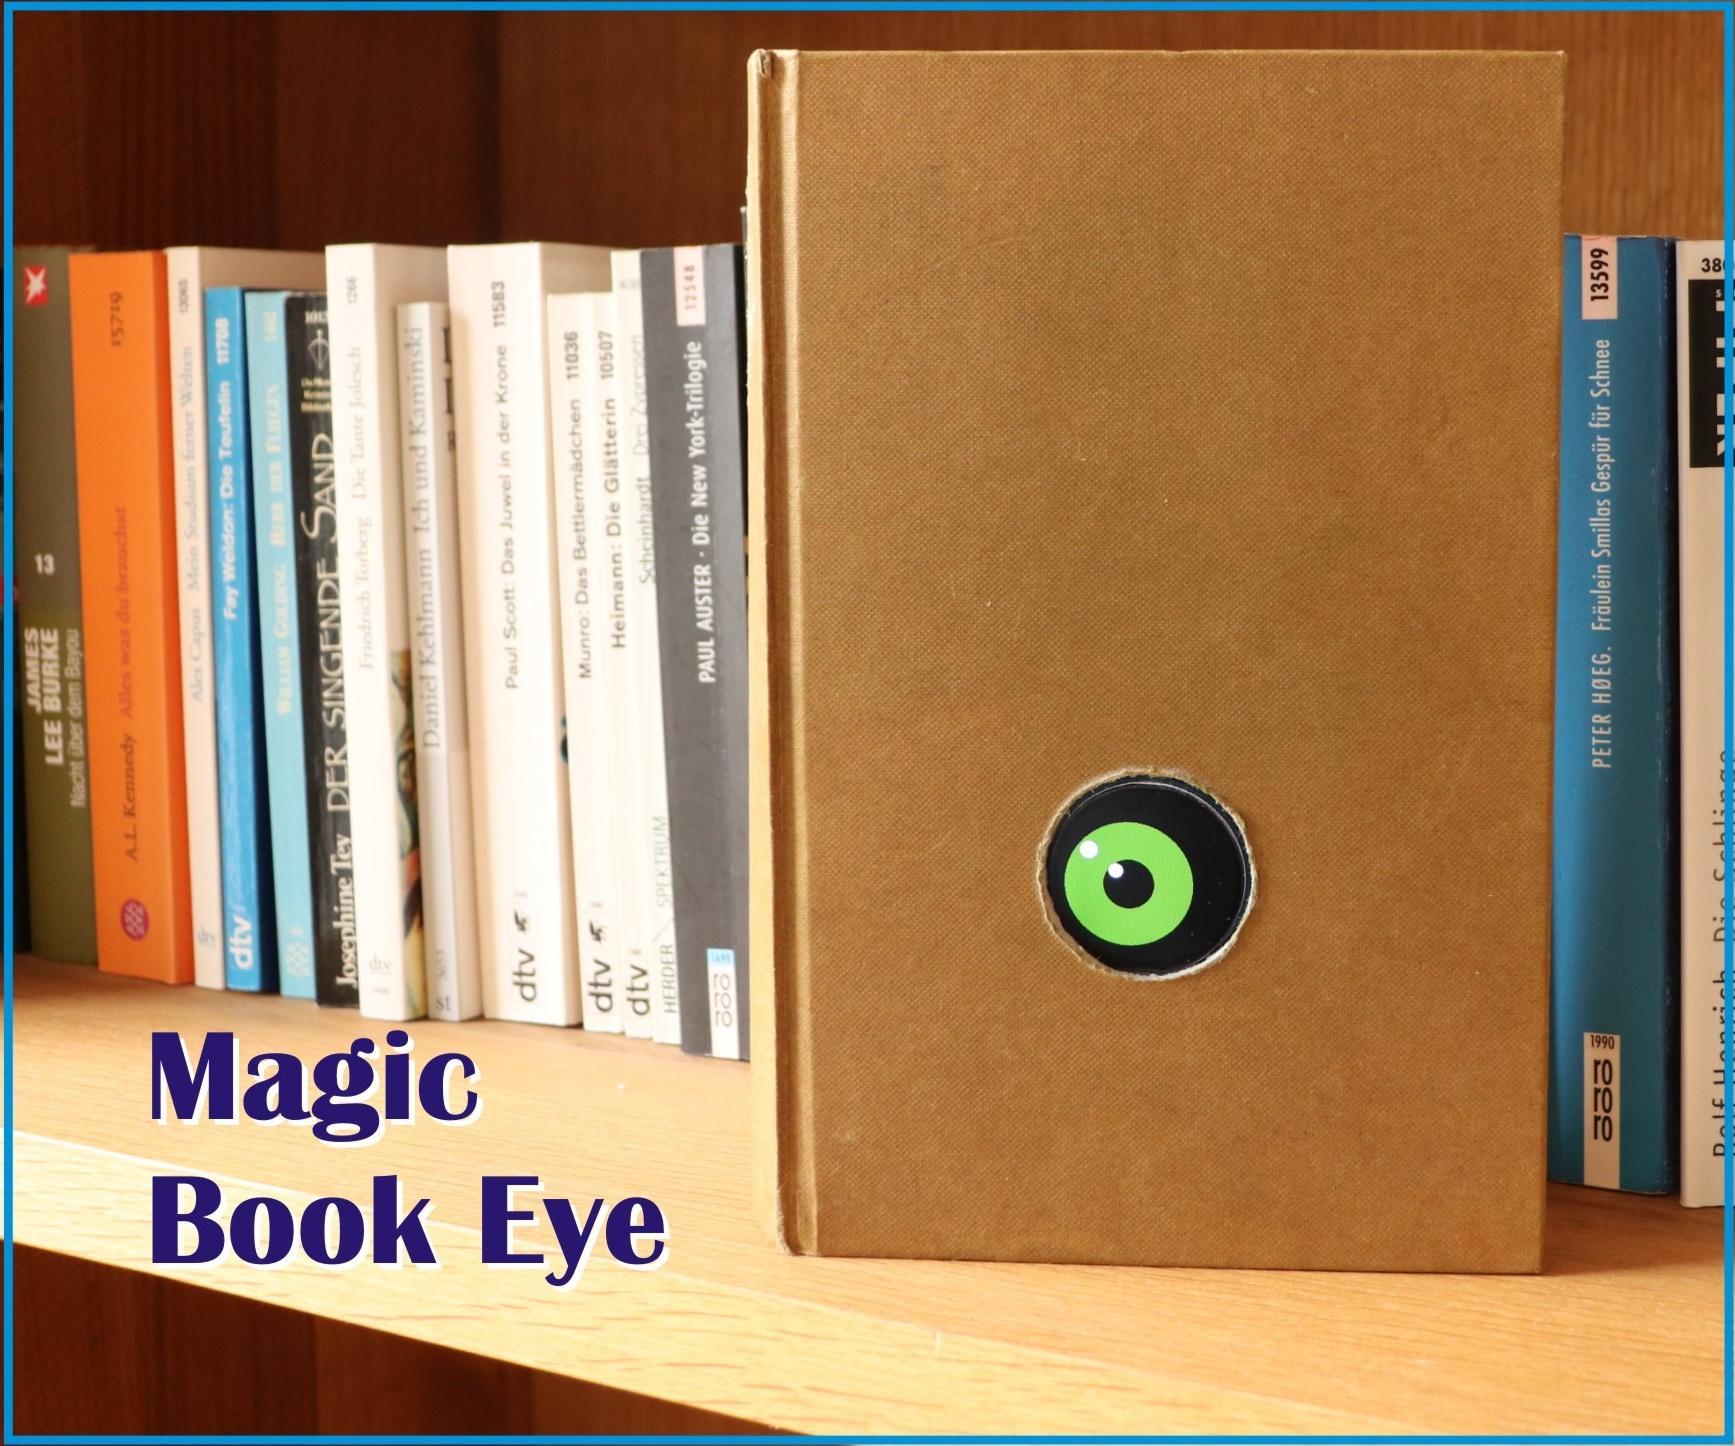 Magic Book Eye